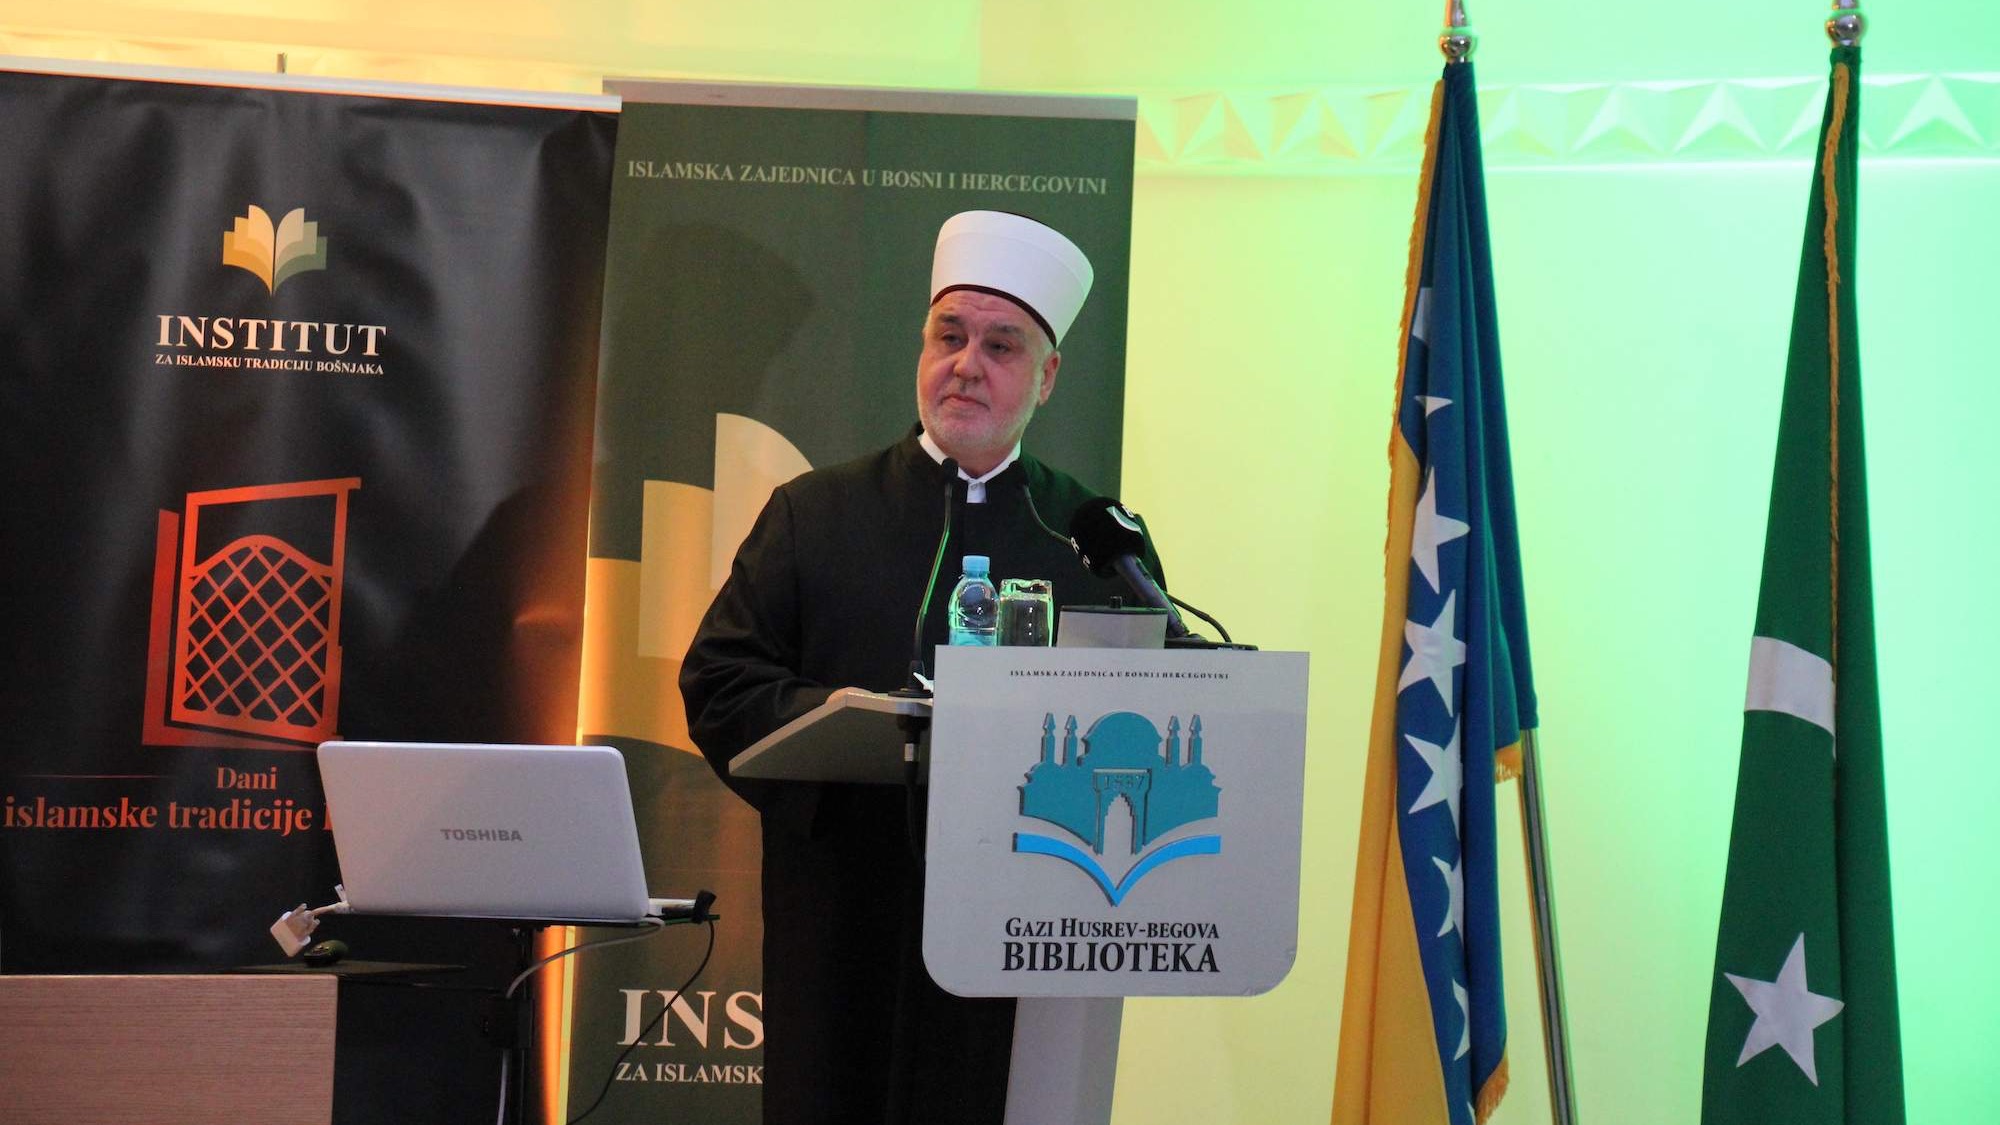 Reisul-ulema Kavazović: Znanje je središnji pojam islamske kulture i civilizacije